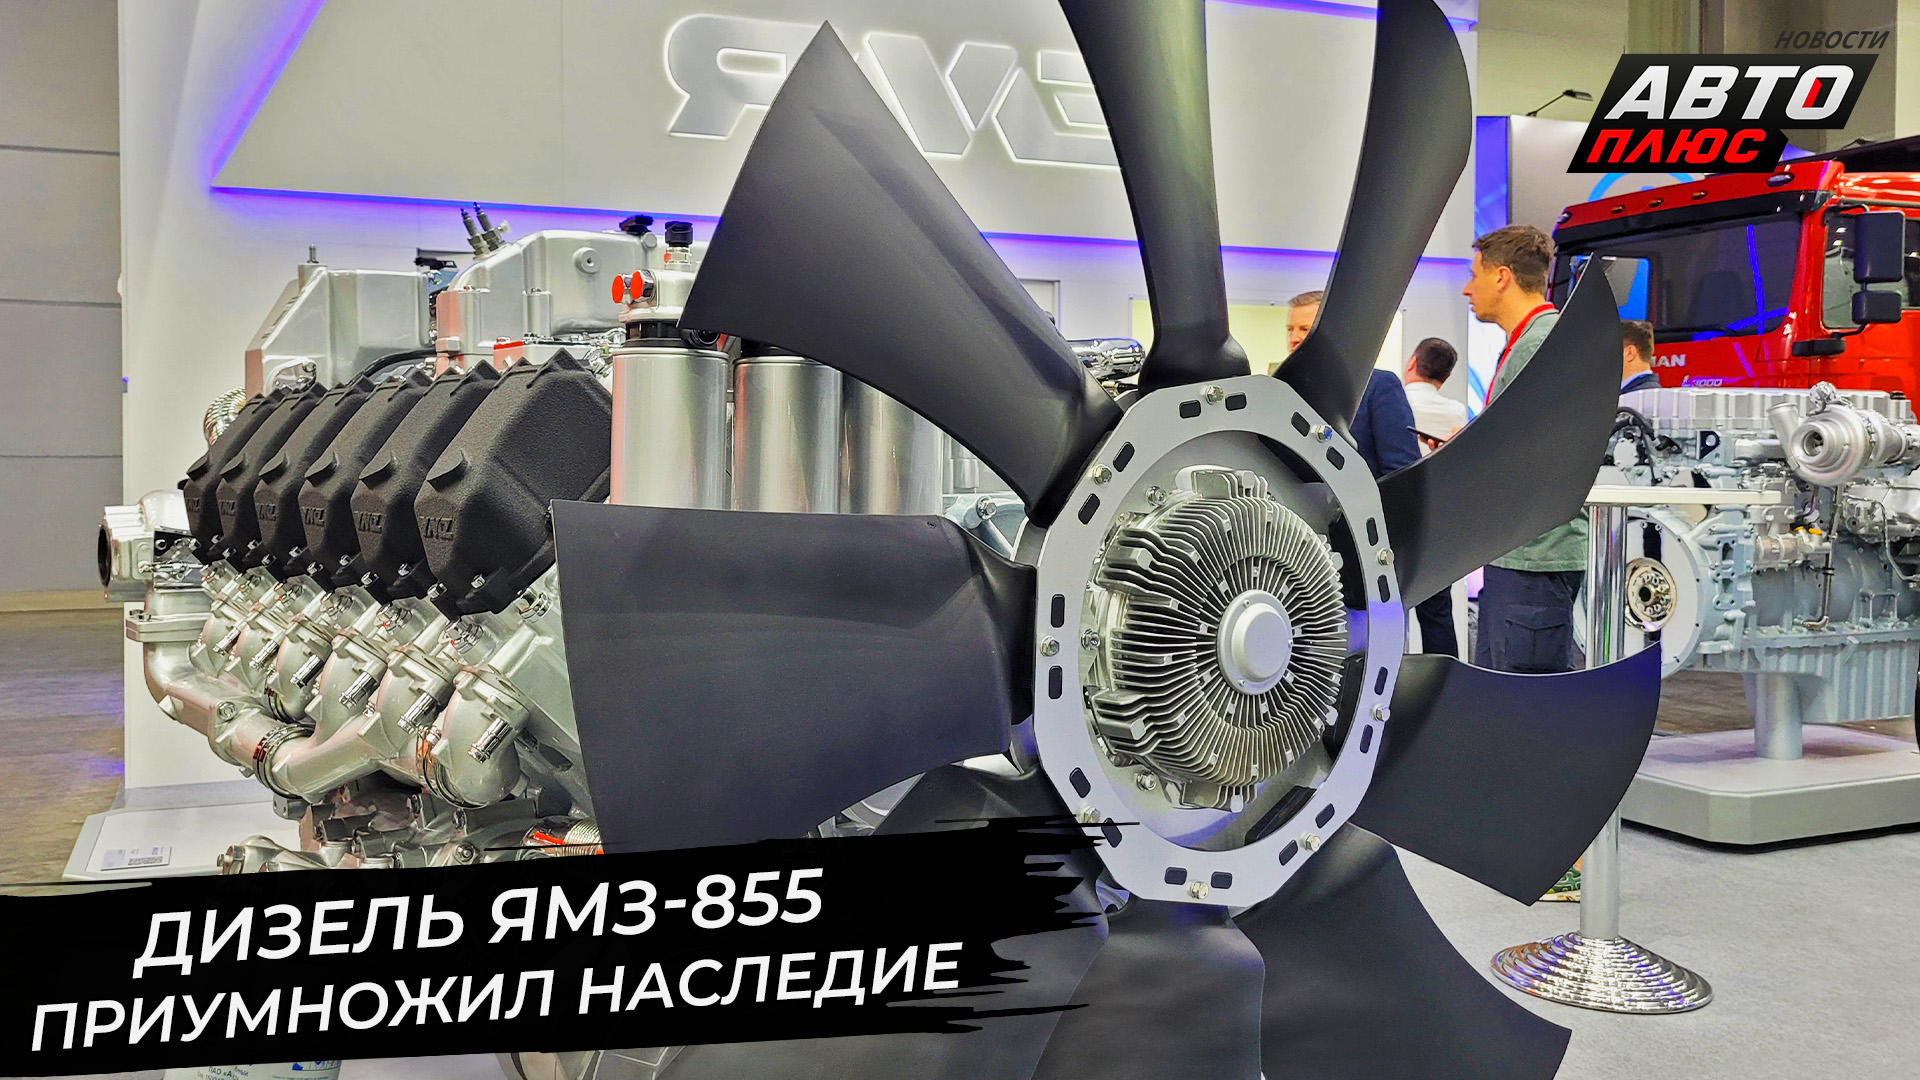 Новый дизель ЯМЗ-855 приумножил наследие 📺 Новости с колёс №2935